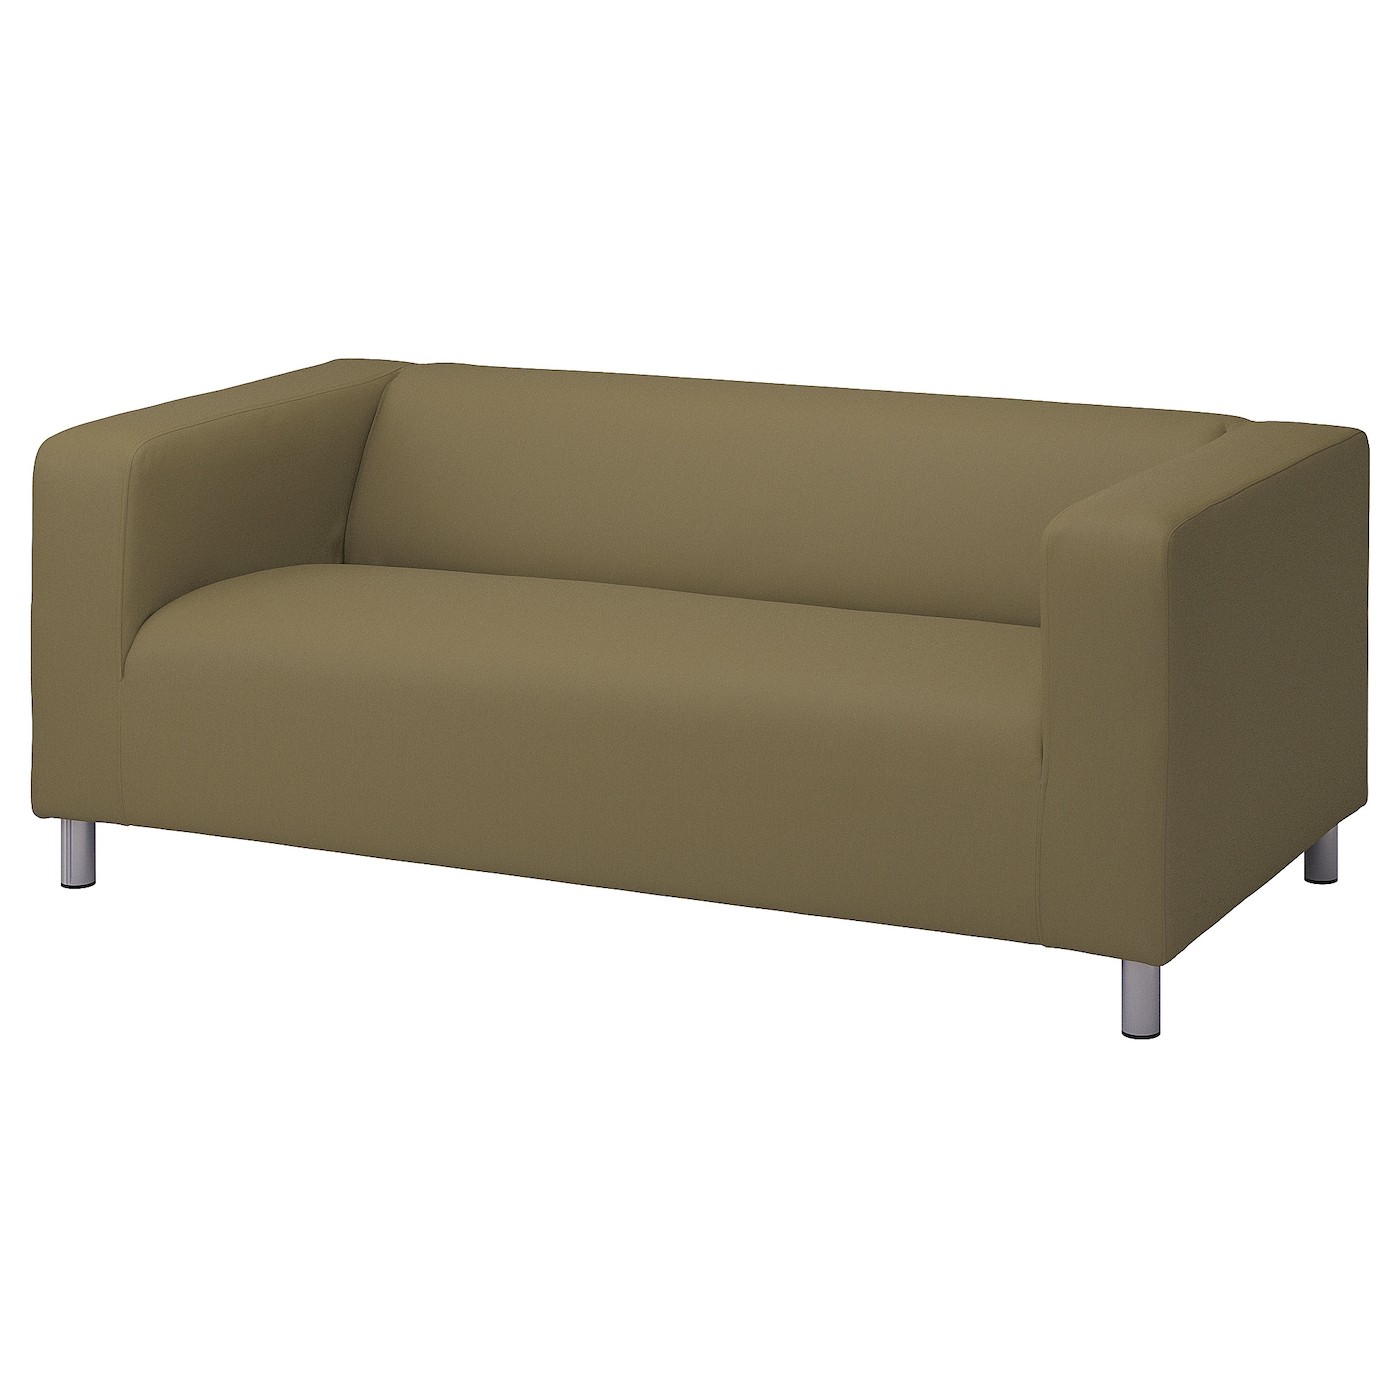 KLIPPAN 2-seat sofa